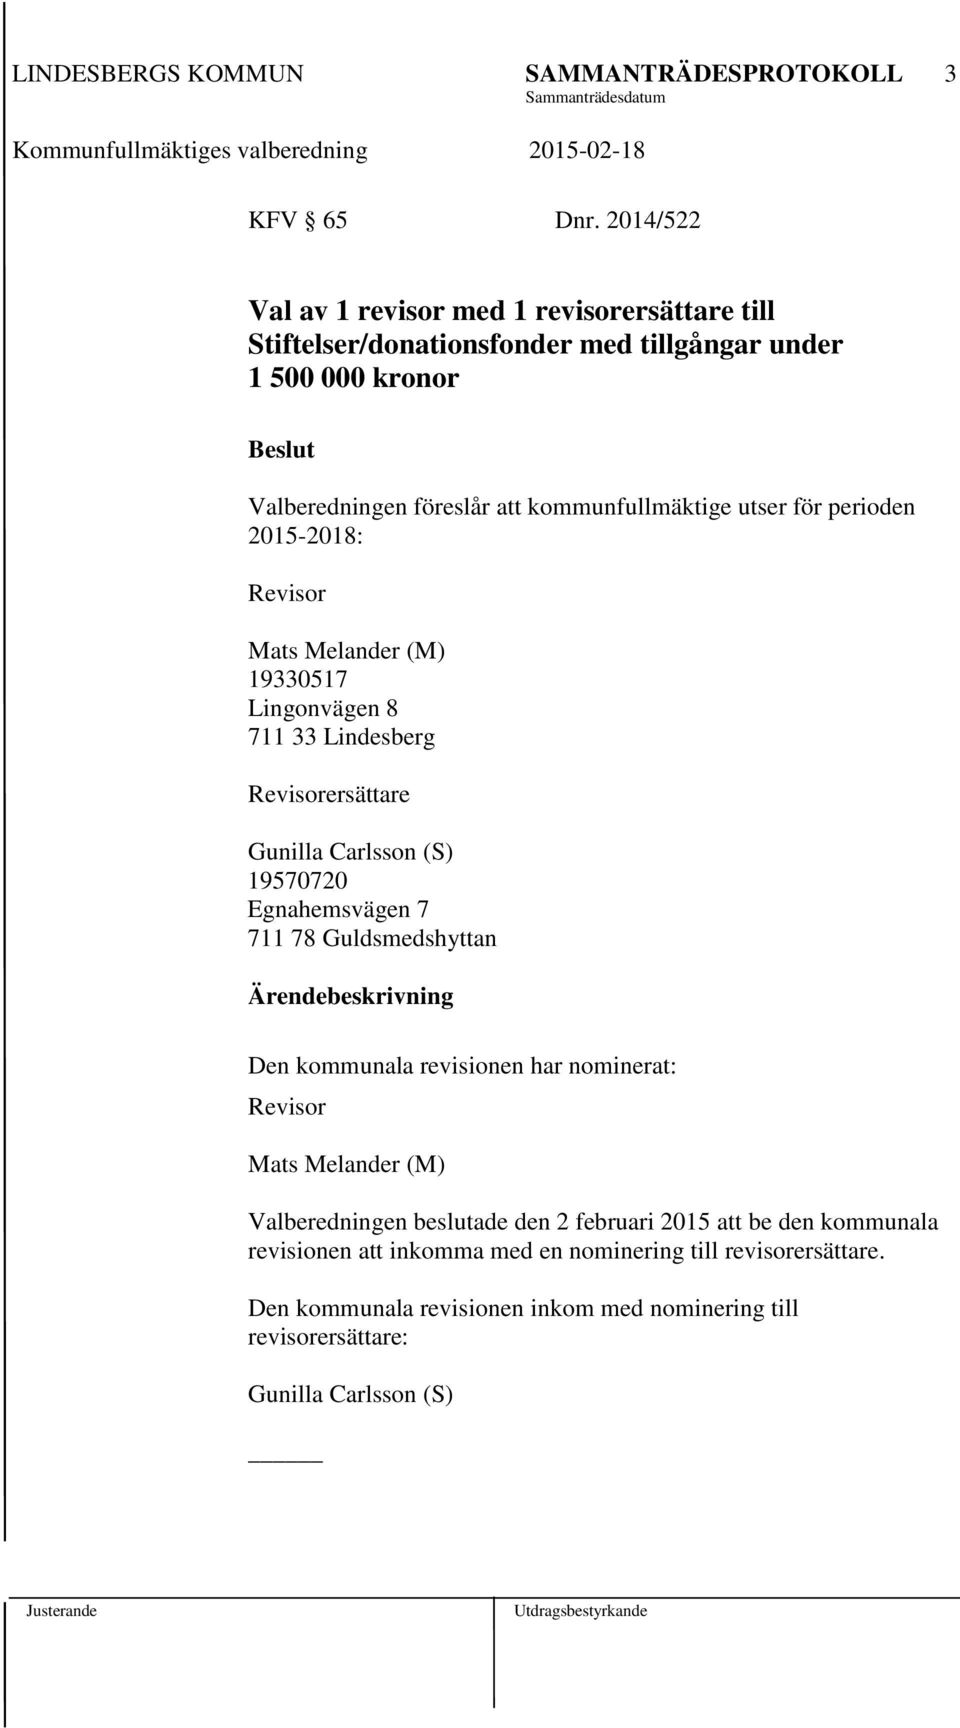 kommunfullmäktige utser för perioden 2015-2018: Revisor Mats Melander (M) 19330517 Lingonvägen 8 711 33 Lindesberg Revisorersättare Gunilla Carlsson (S) 19570720